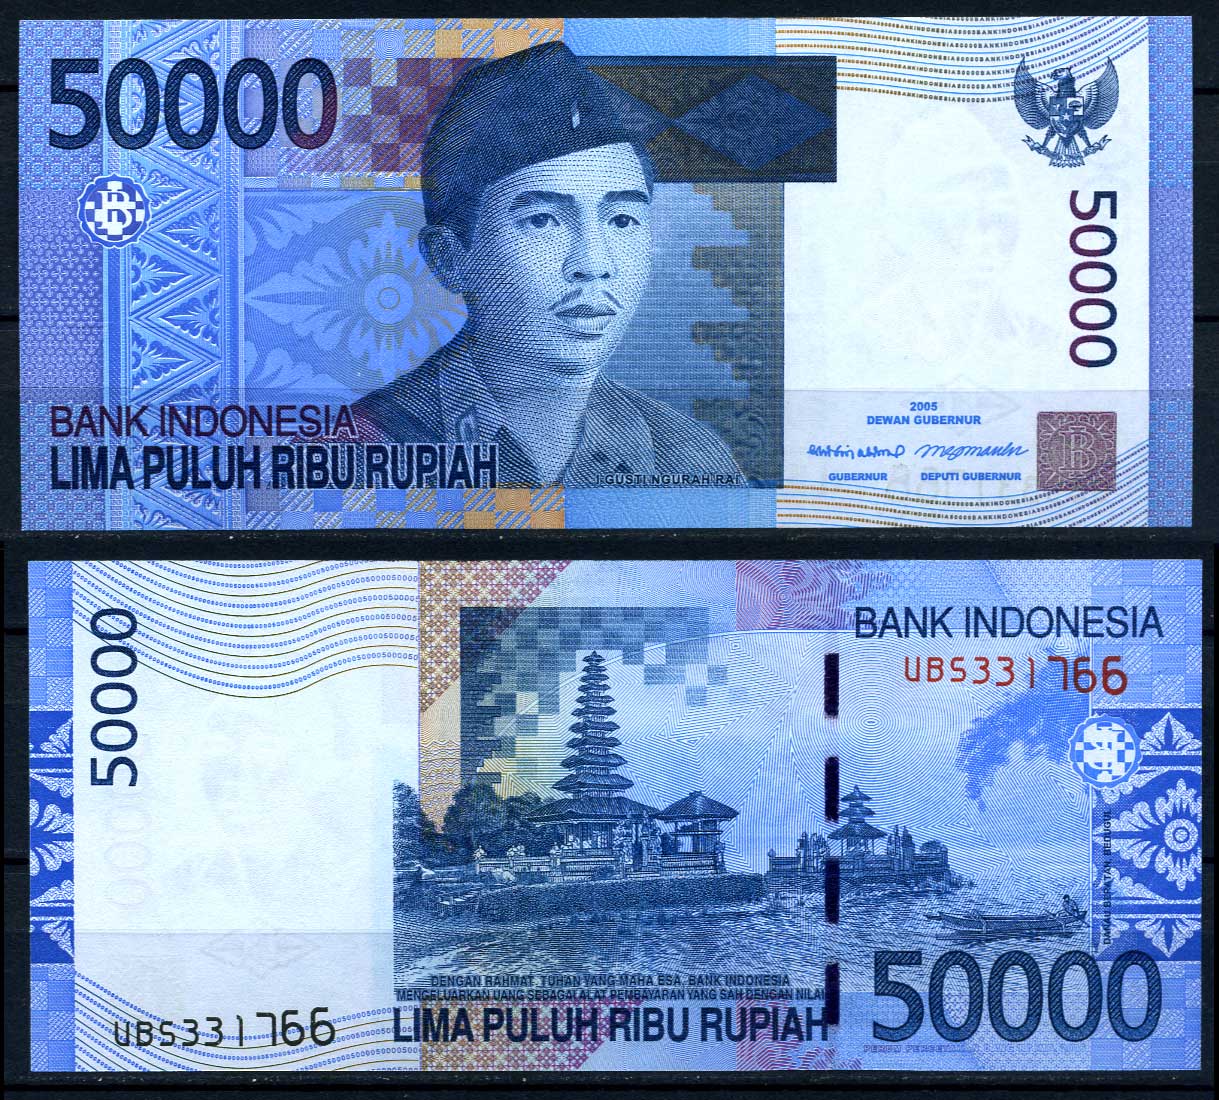 T me banknotes. Деньги Индонезии. Индонезийские банкноты. Индонезийская рупия банкноты. IDR купюры.